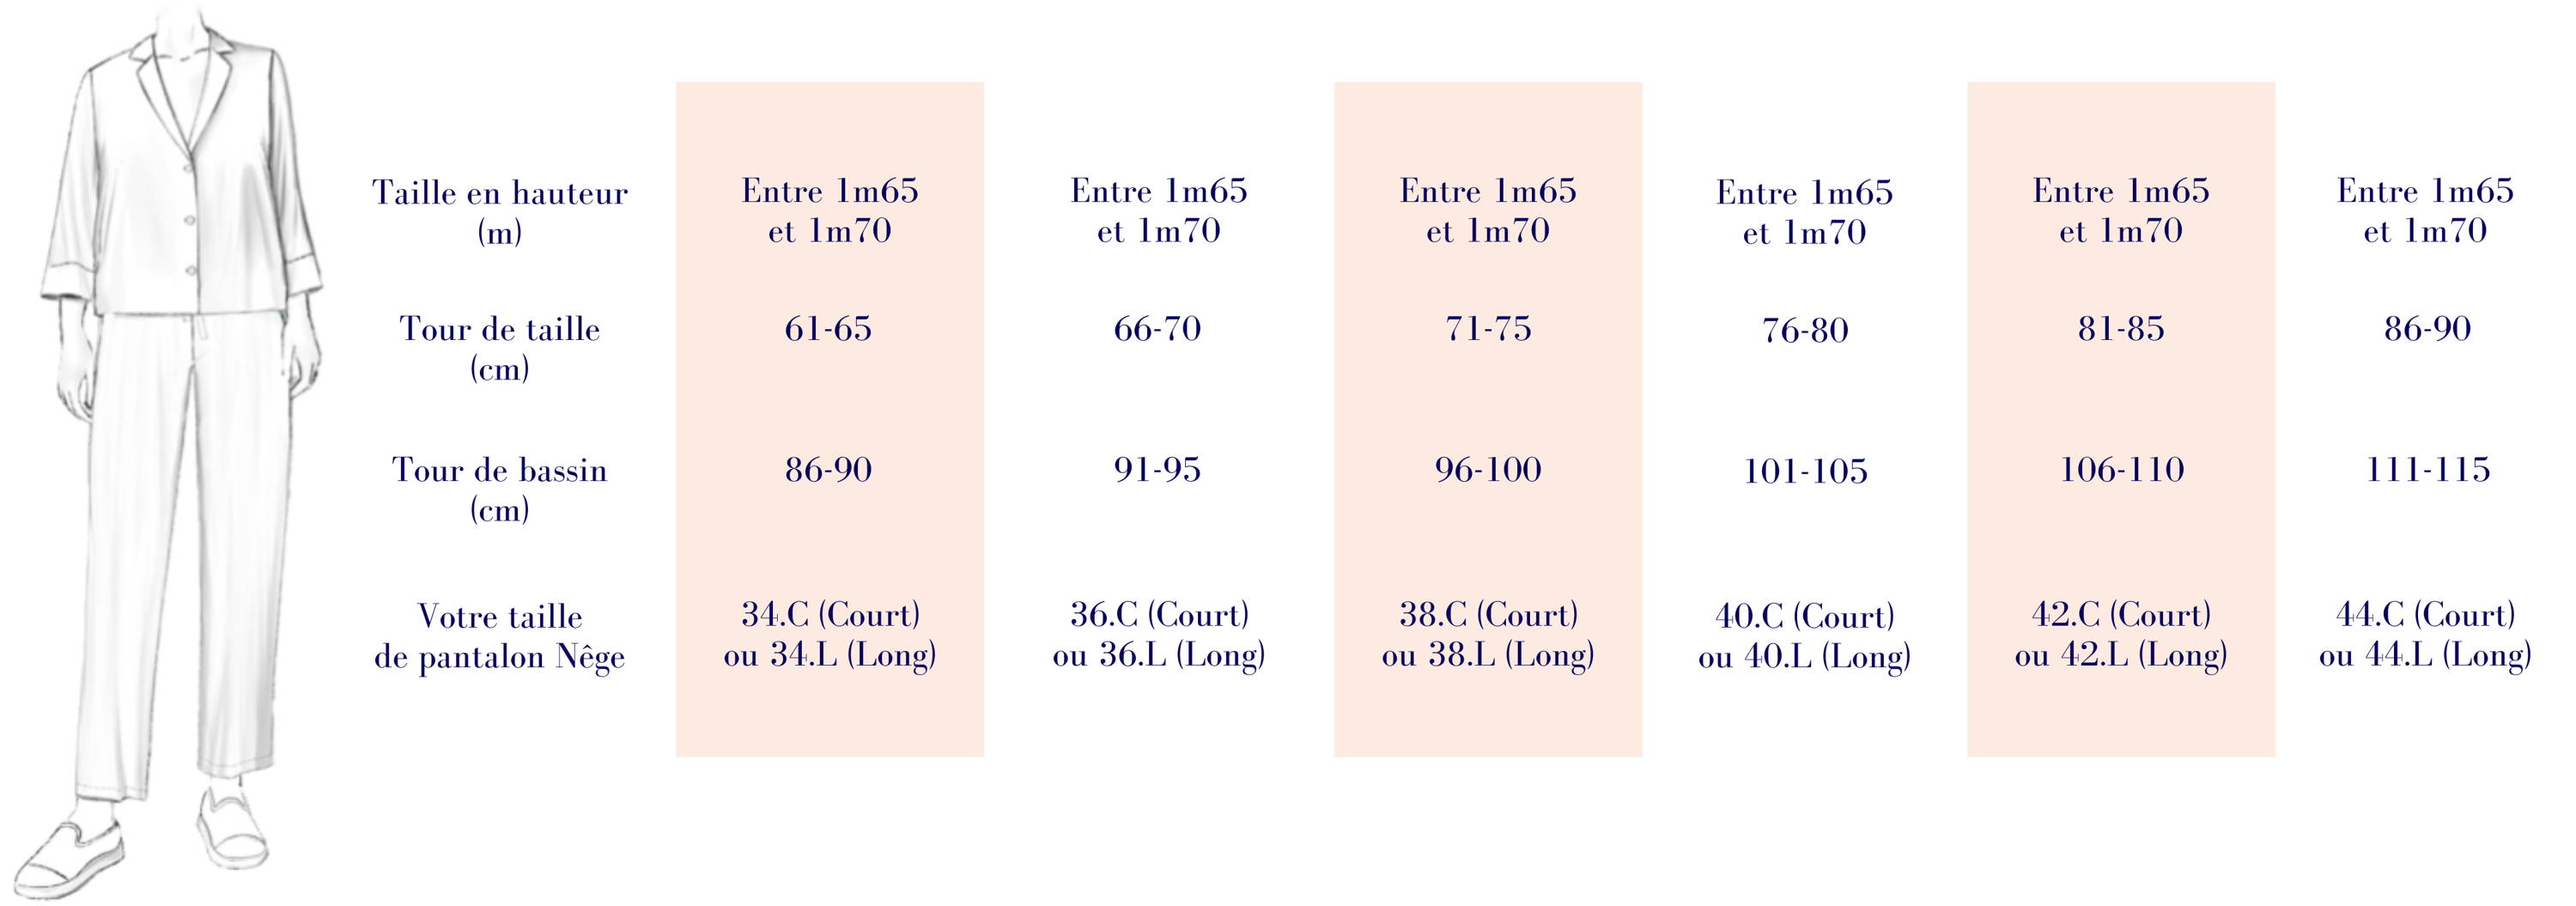 Nêge Paris – Tableau de mesures des tailles de pantalon si vous faites entre 1m65 et 1m70